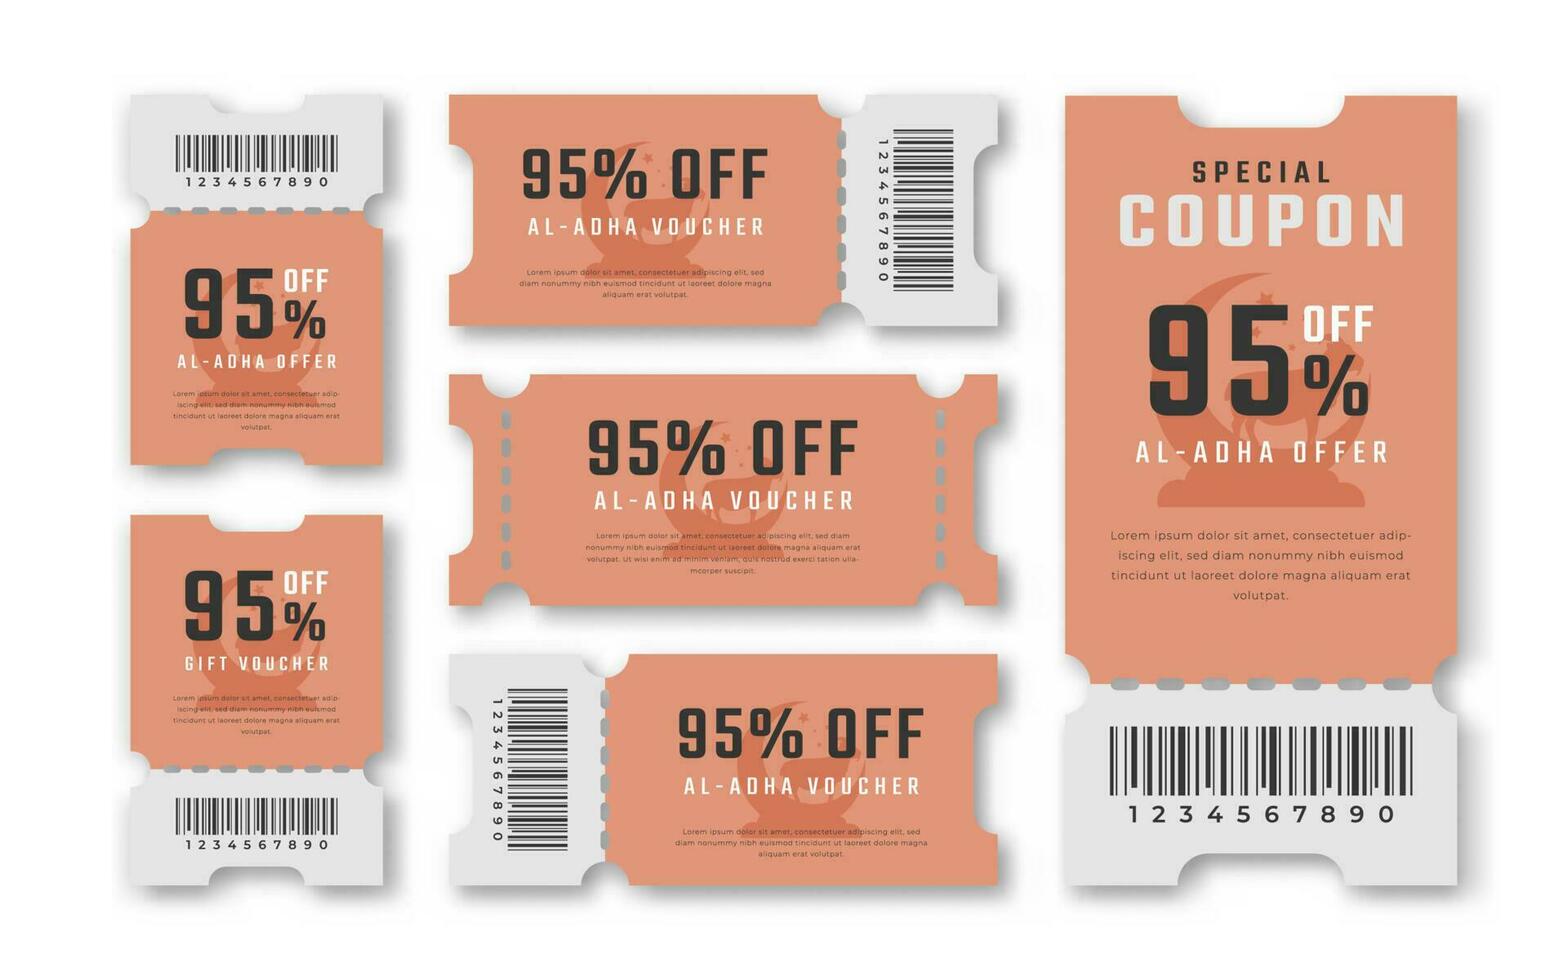 al adha uitverkoop coupon korting tegoedbon 95 procent uit voor promo code, winkelen, afzet en het beste promo kleinhandel prijzen vector illustratie